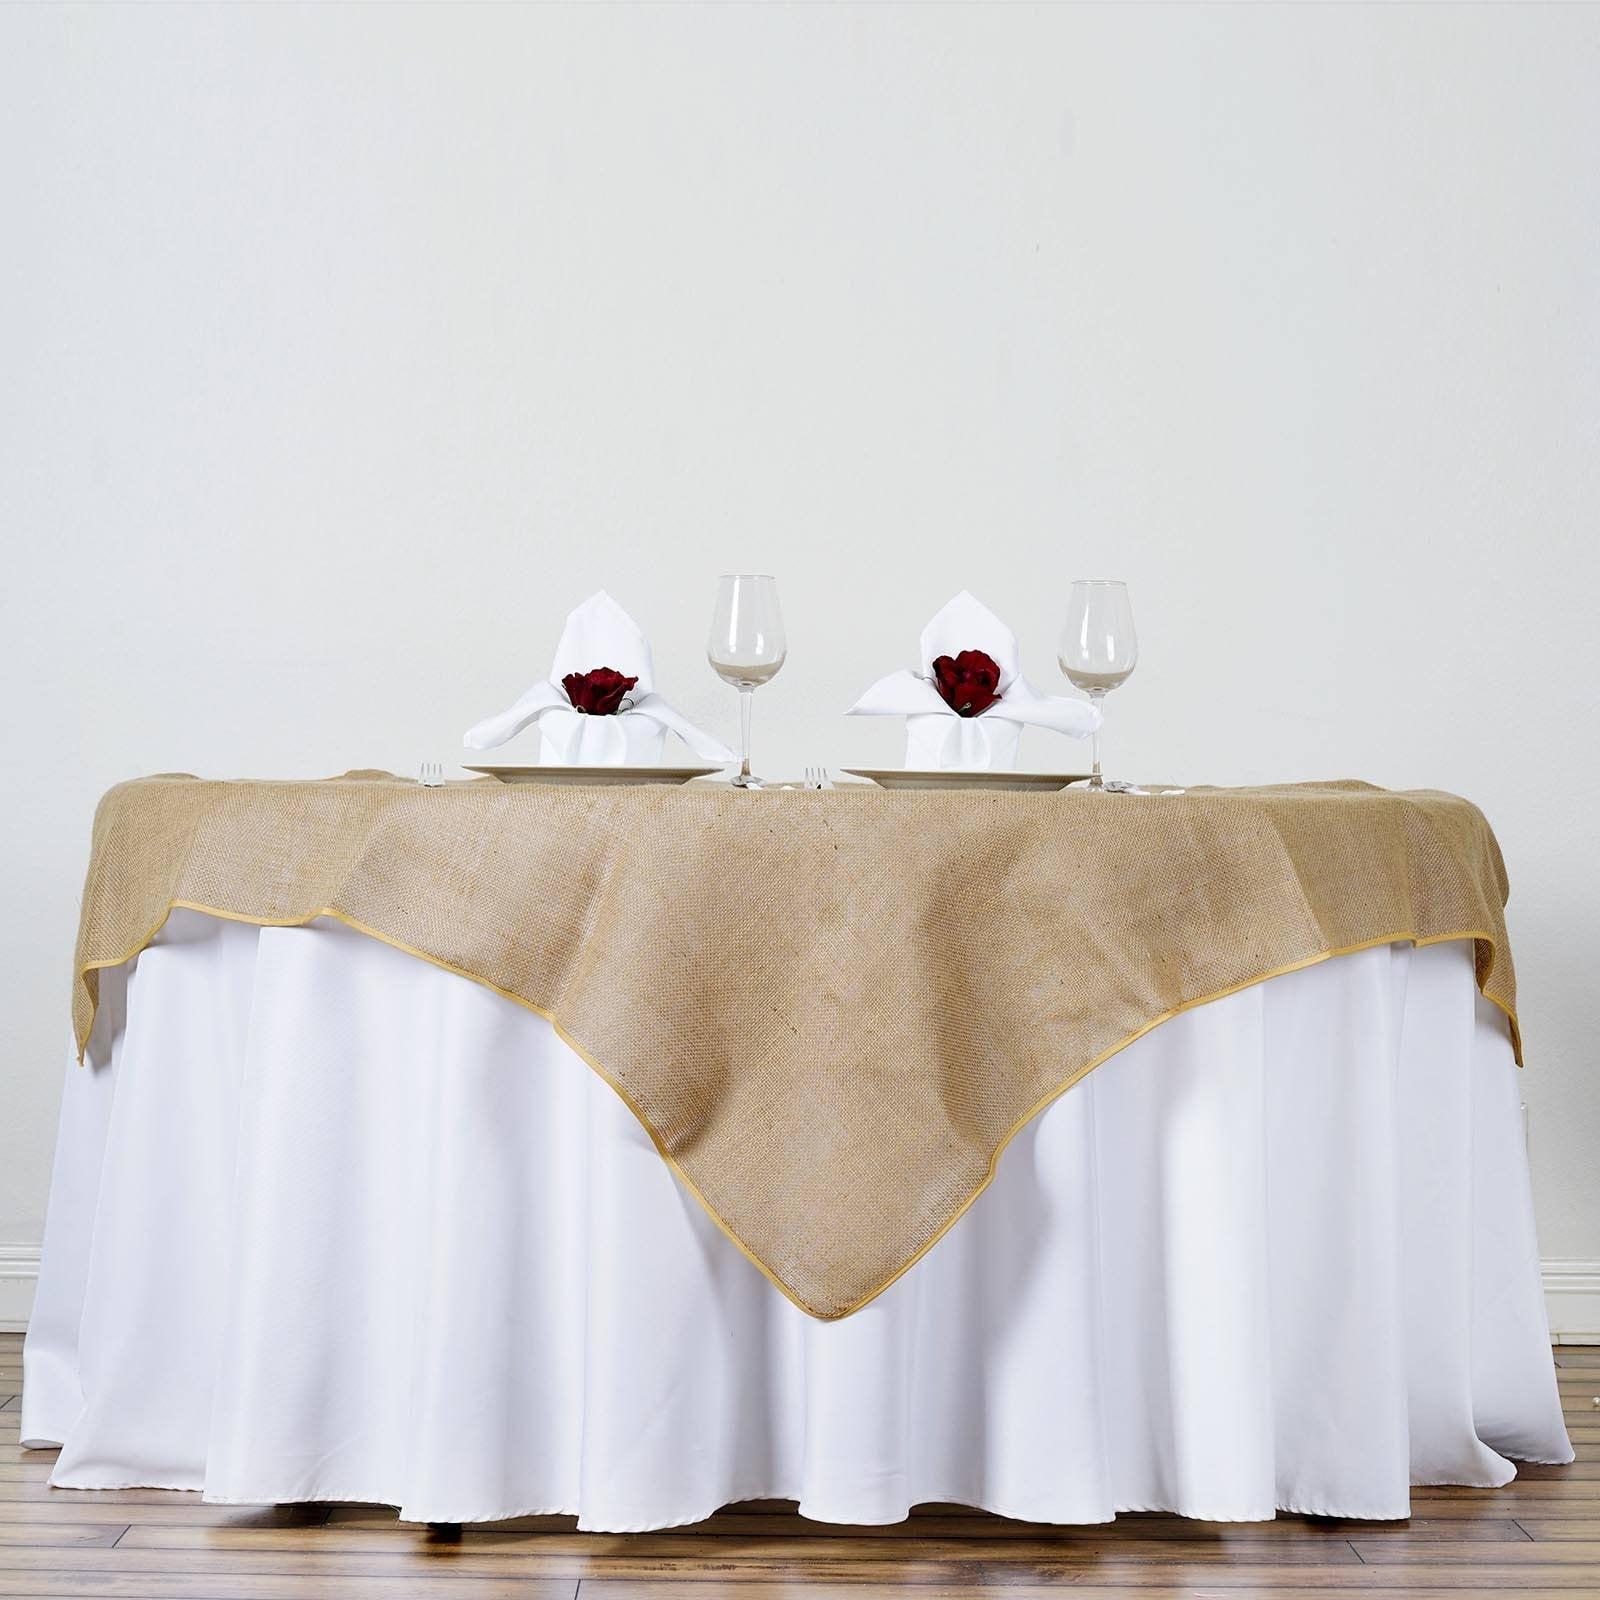 20 Lot 54"×54" Burlap Tablecloths Overlays Seamless Wedding 100% Natural Jute 